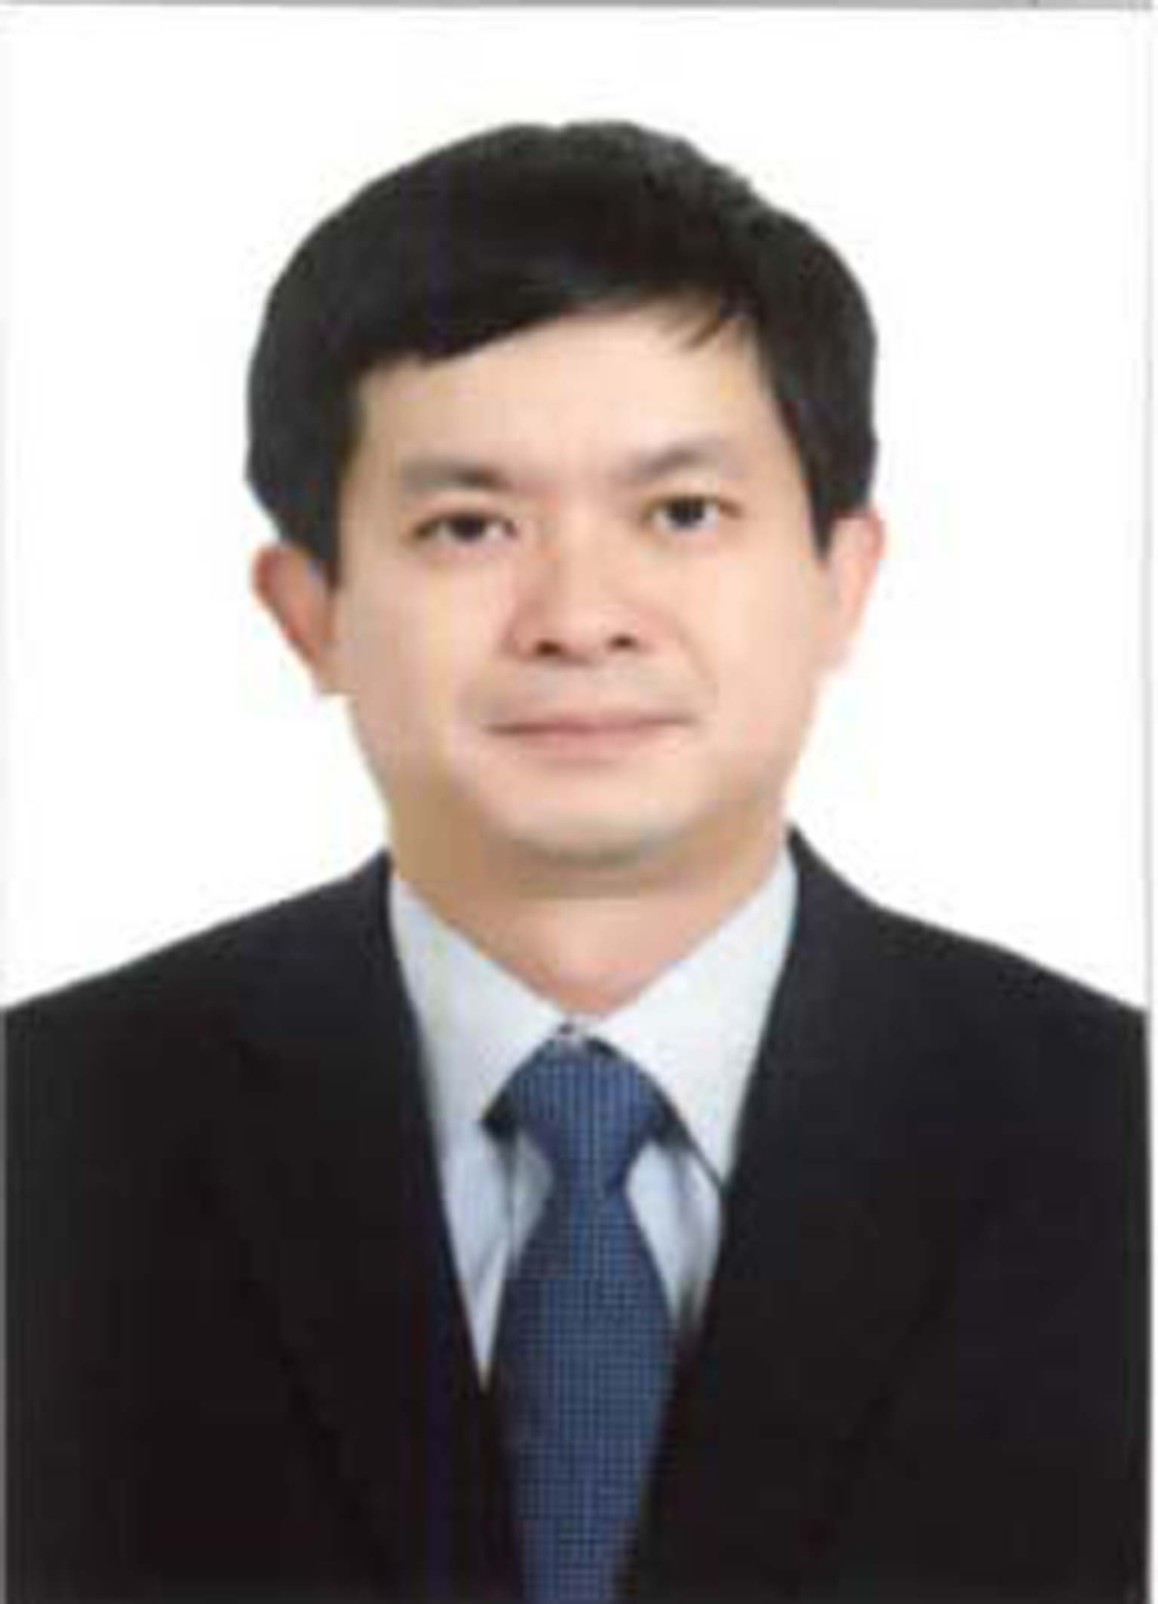 Đồng Chí Lê Quang Tùng - Ủy viên dự khuyết BCH Trung ương ĐCSVN - Bí thư Tỉnh ủy Quảng Trị